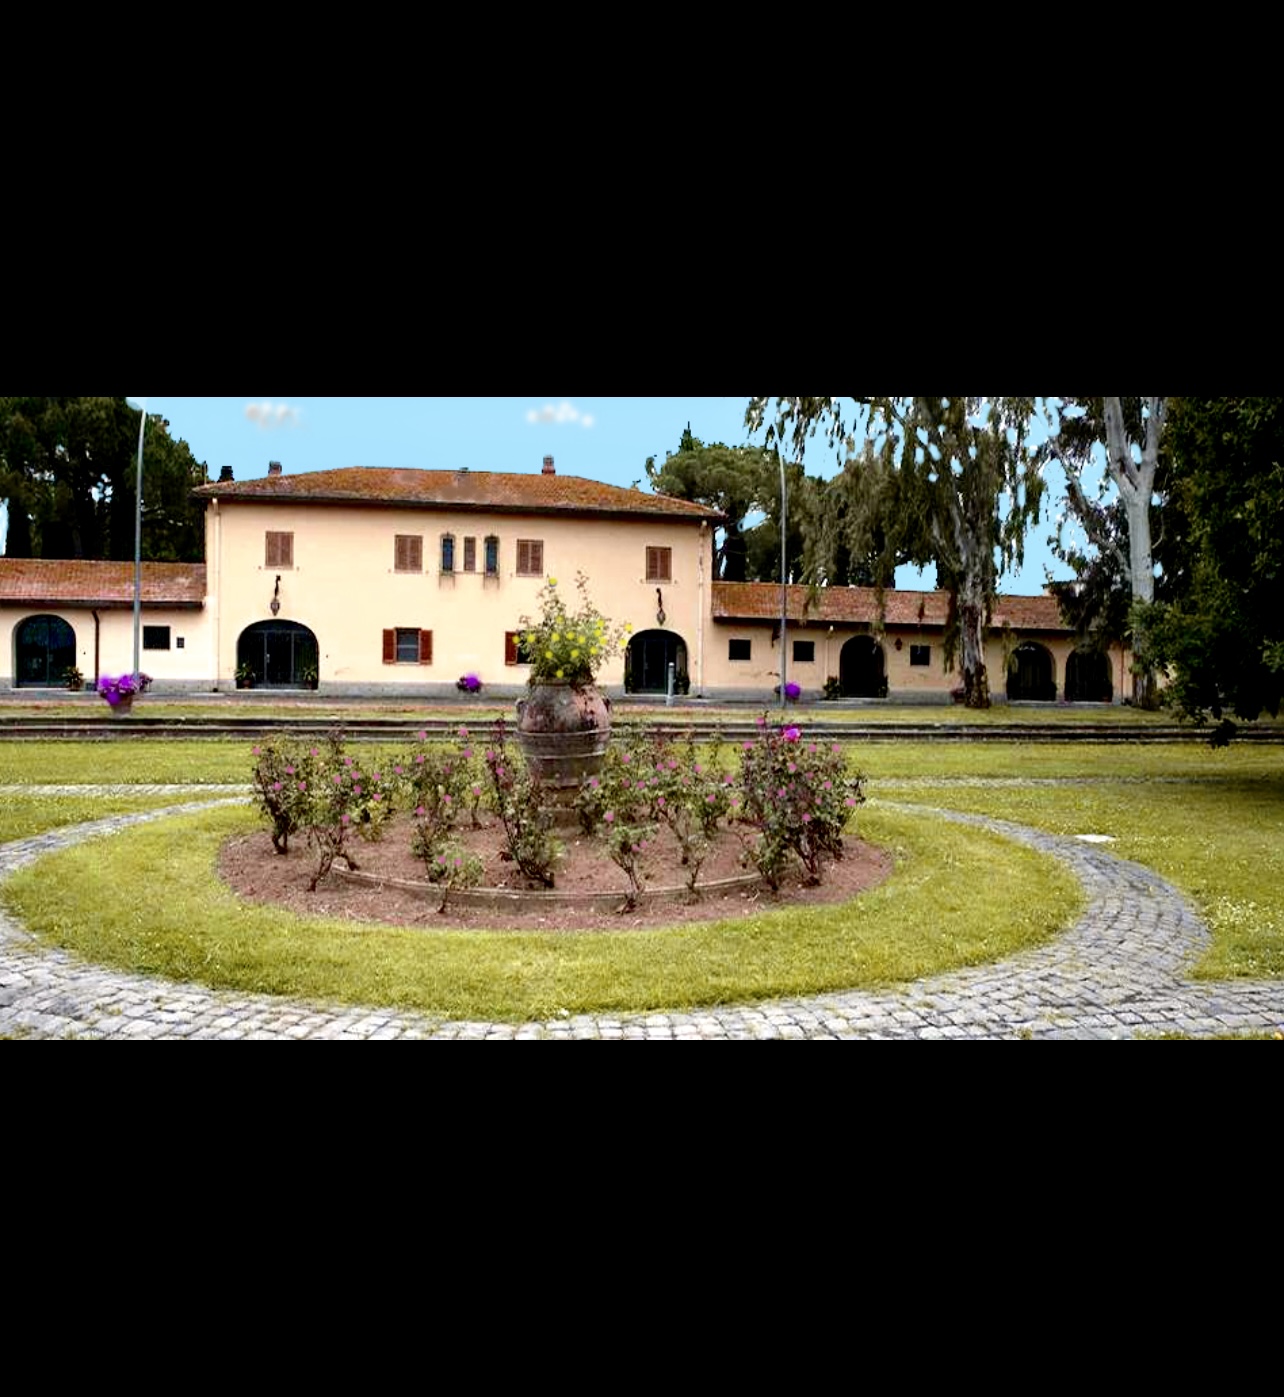 Un grand bâtiment avec un jardin fleuri en face, proposant une sélection de vins Vins de Casale del Giglio.